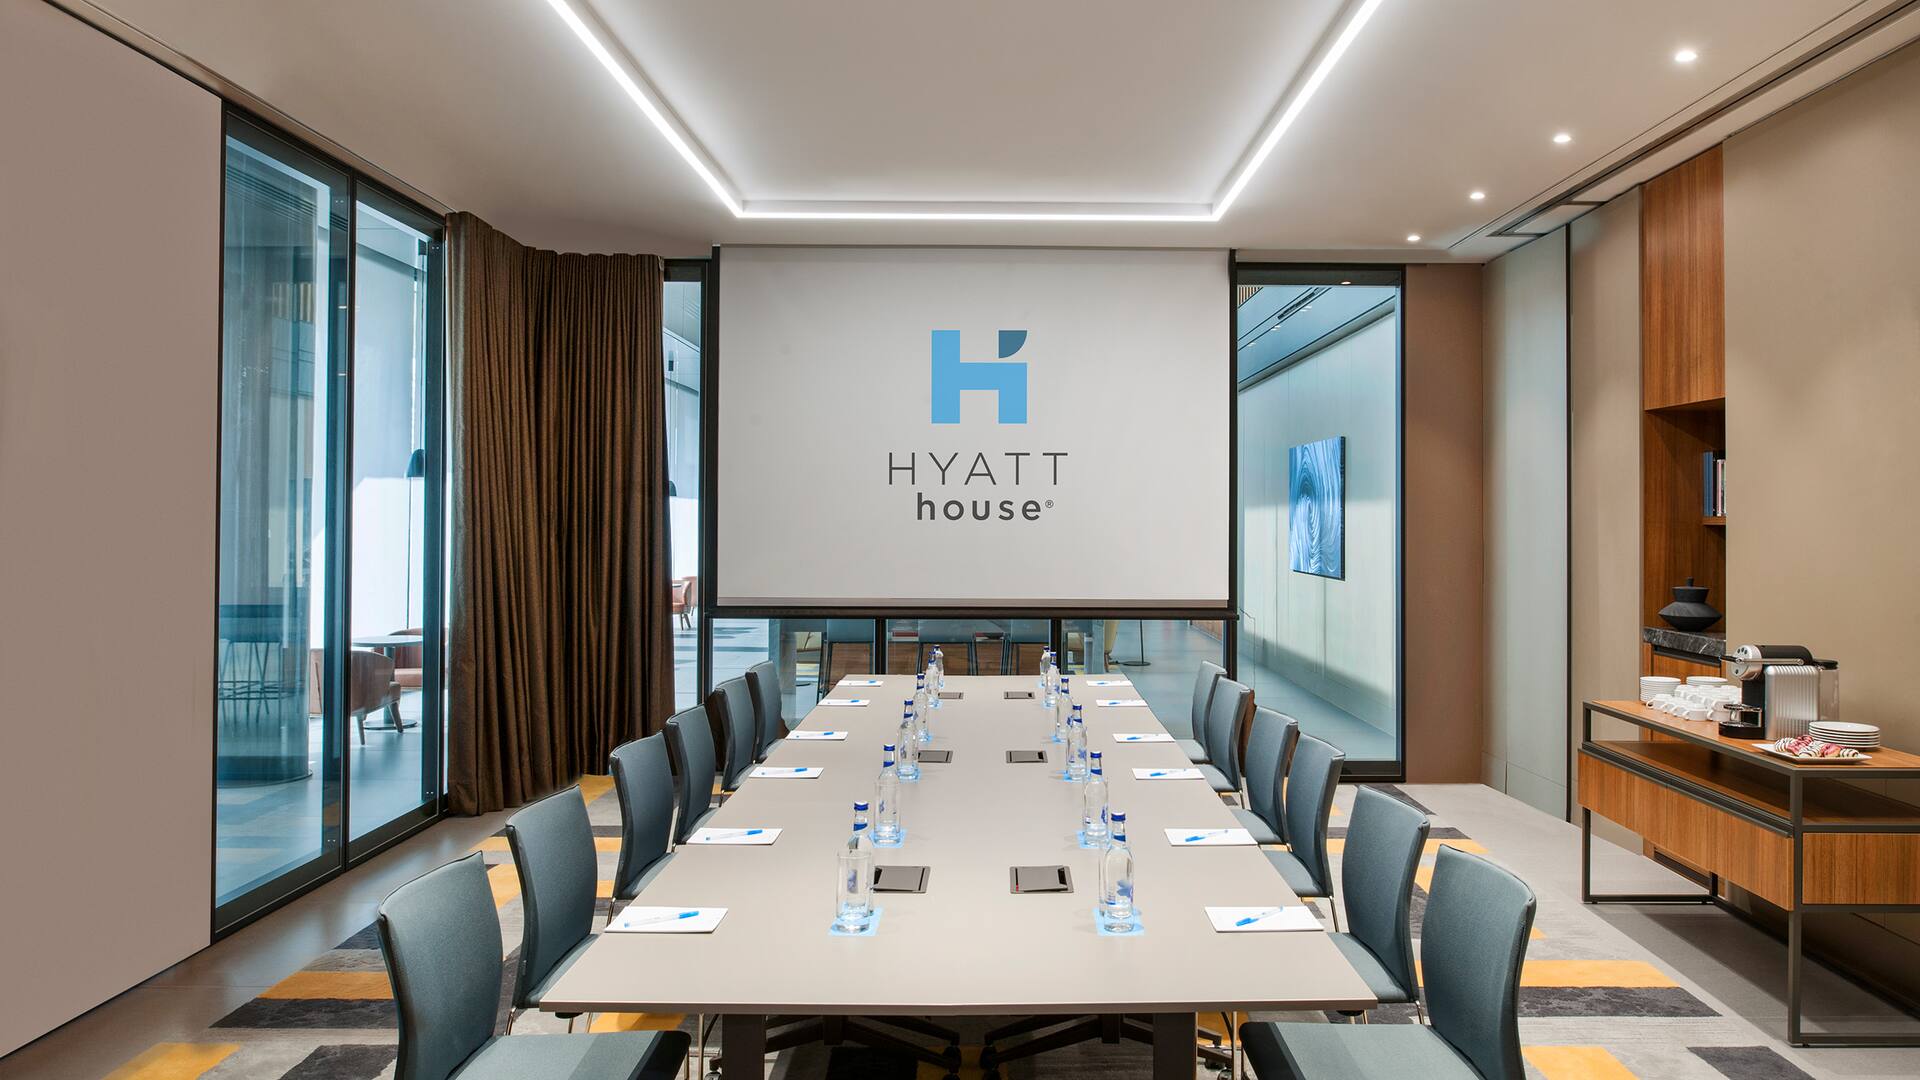 Hyatt House Meetings